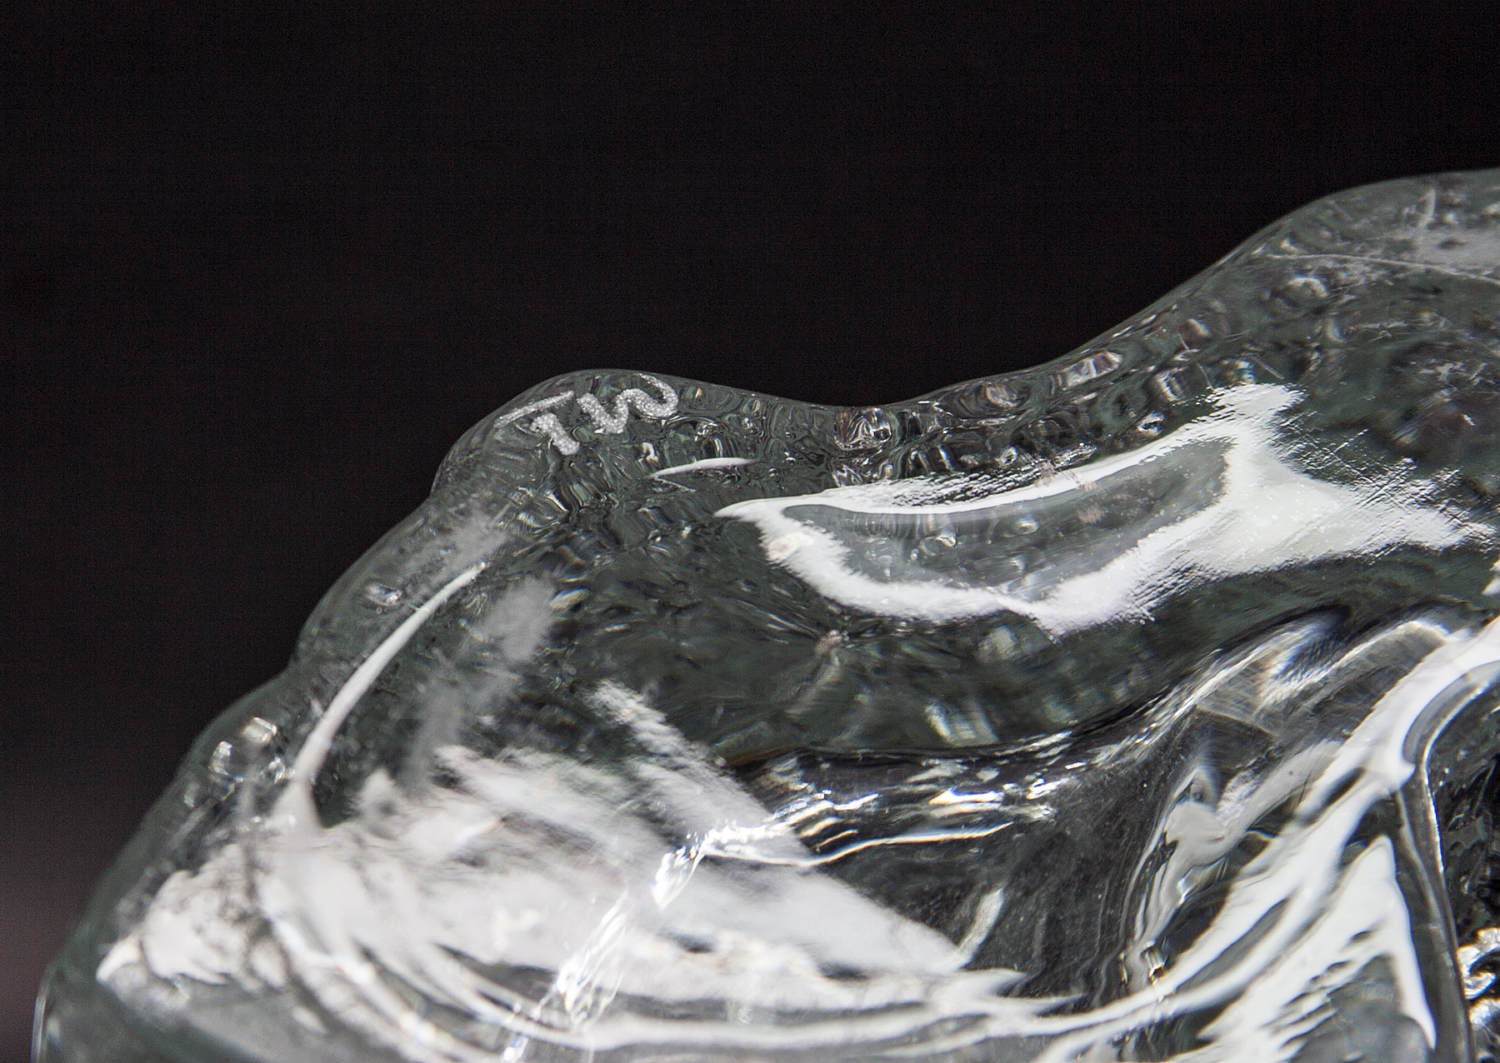 TAPIO WIRKKALA Iittala PINUS Crystal Glass Vase Mollaris.com 